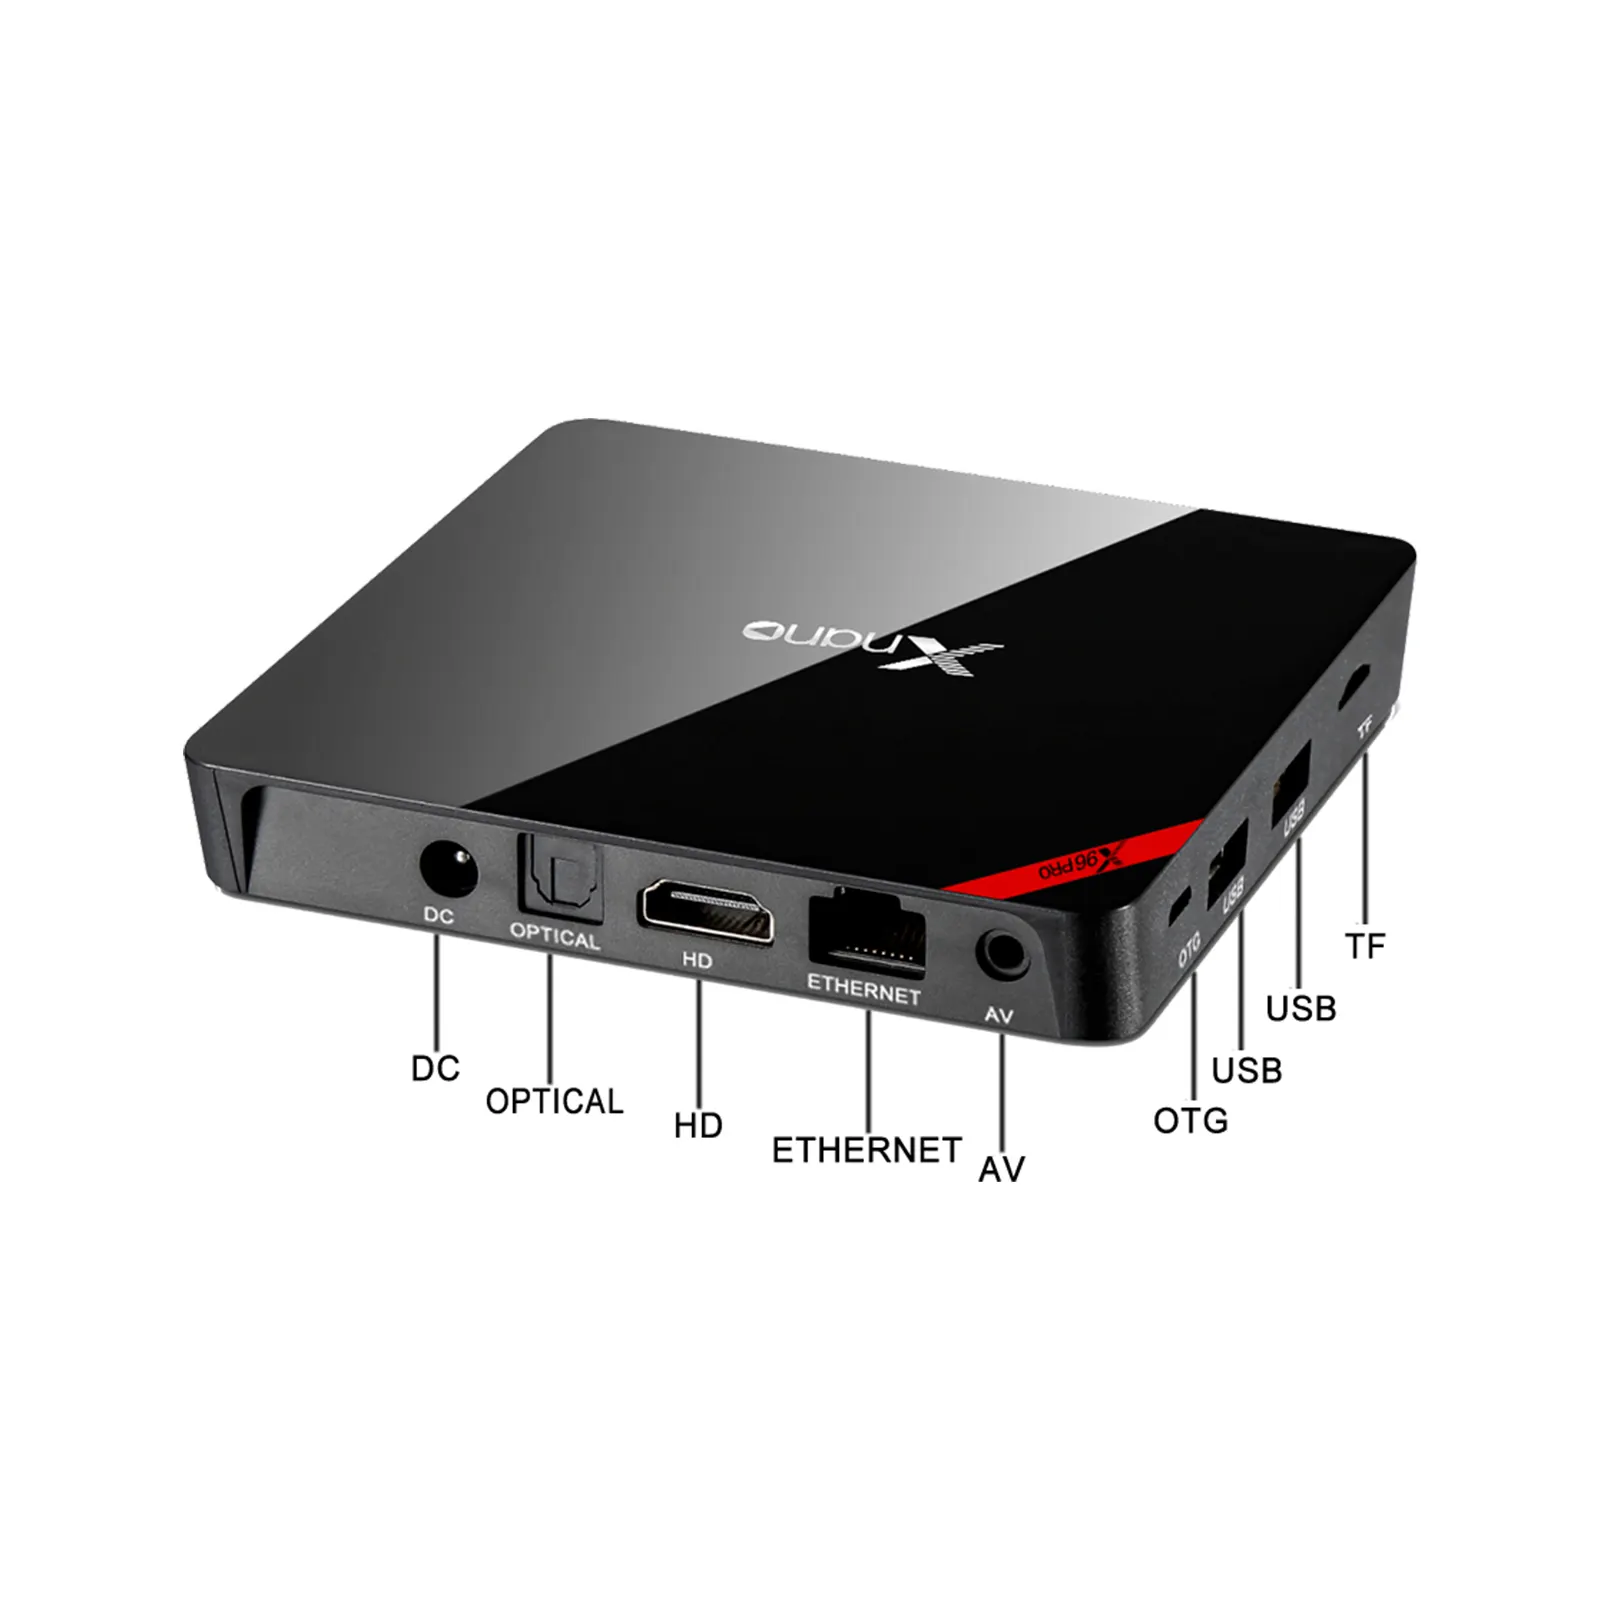 ENY-decodificador XNANO X96 PRO con canales, televisión por Internet en 4K, receptor de IPTV árabe